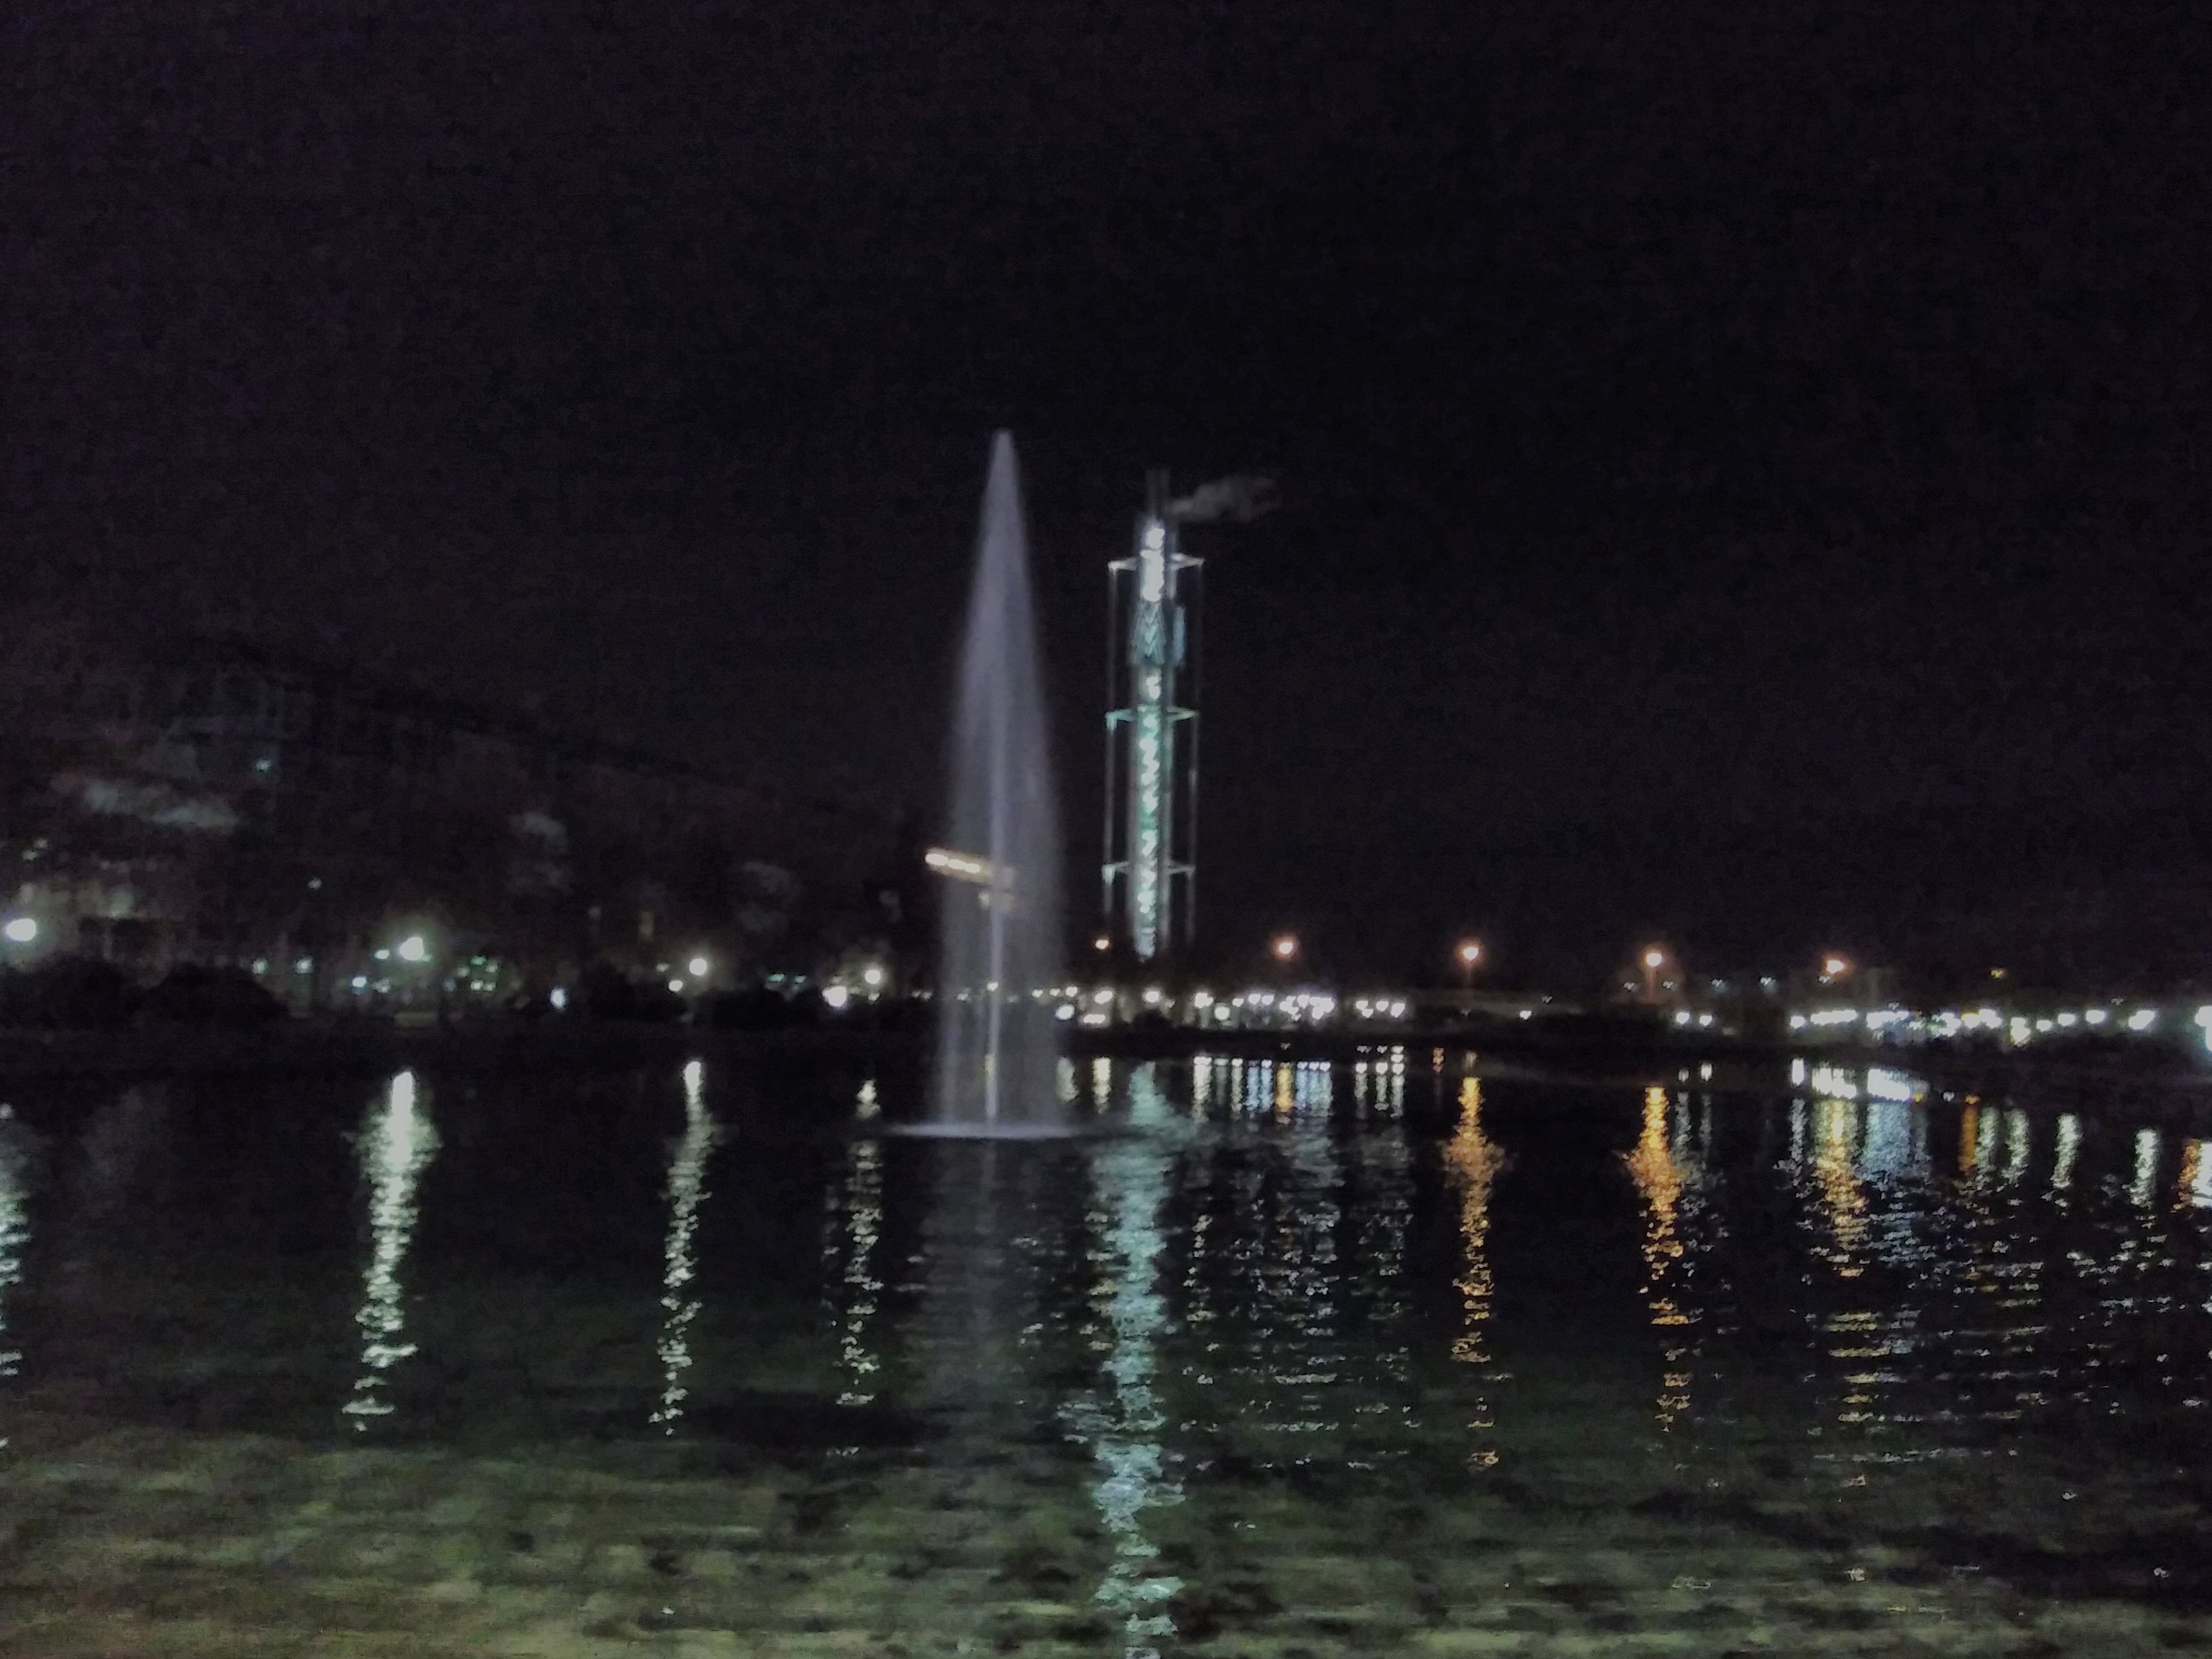 der Messesee bei Nacht